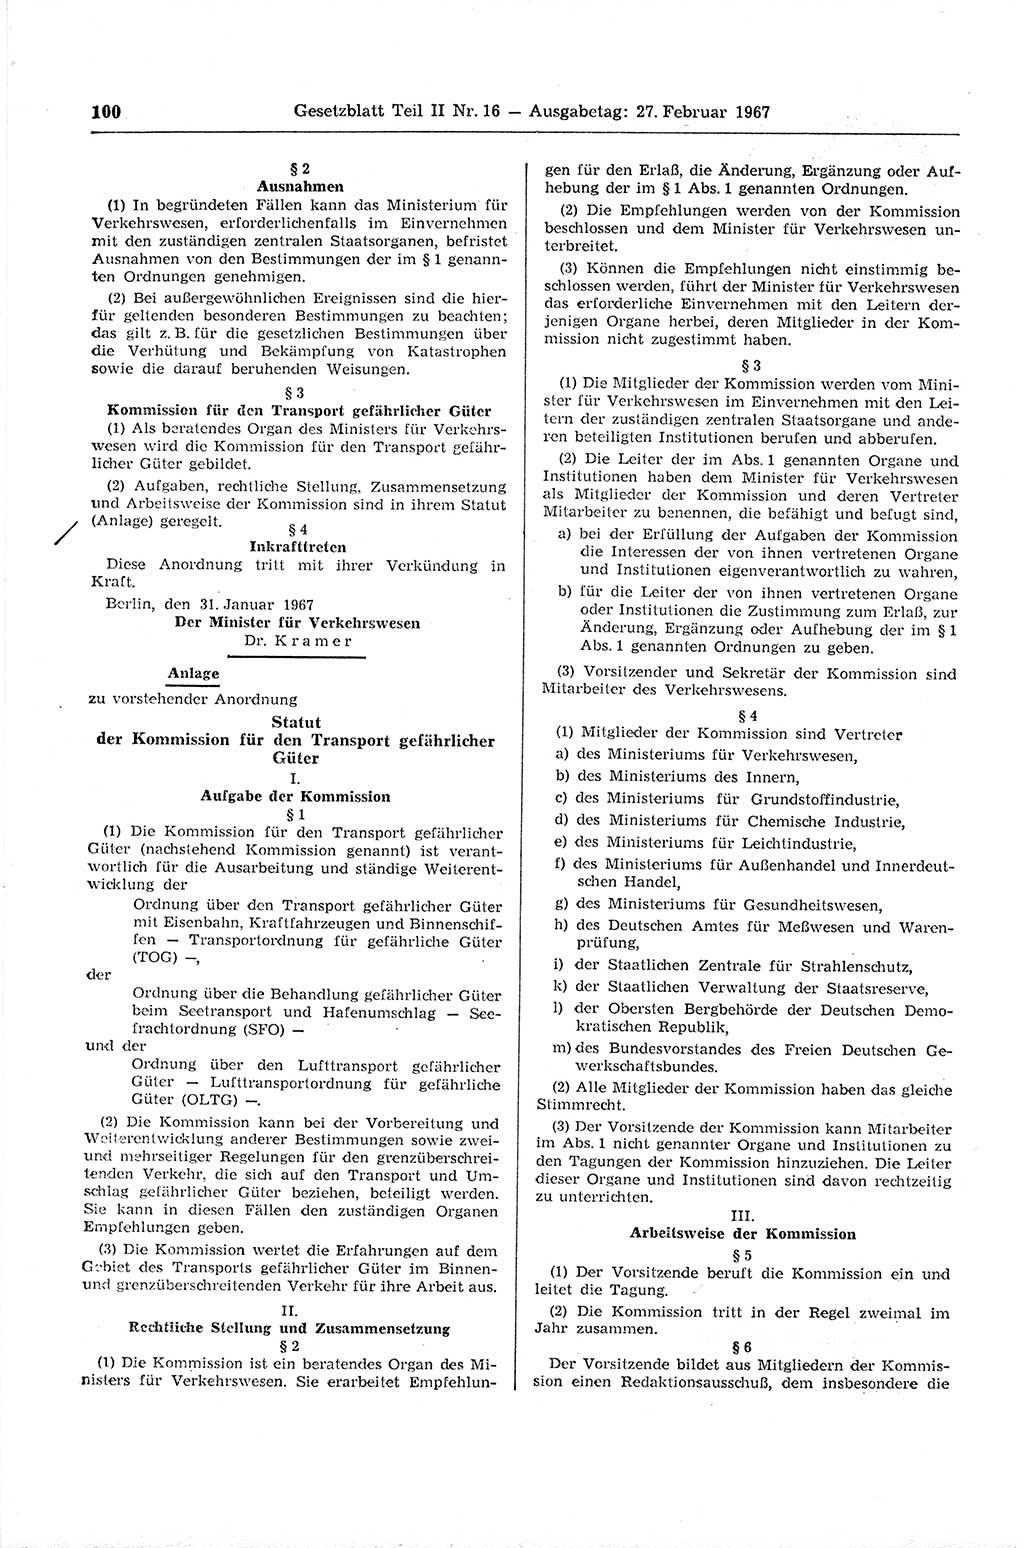 Gesetzblatt (GBl.) der Deutschen Demokratischen Republik (DDR) Teil ⅠⅠ 1967, Seite 100 (GBl. DDR ⅠⅠ 1967, S. 100)